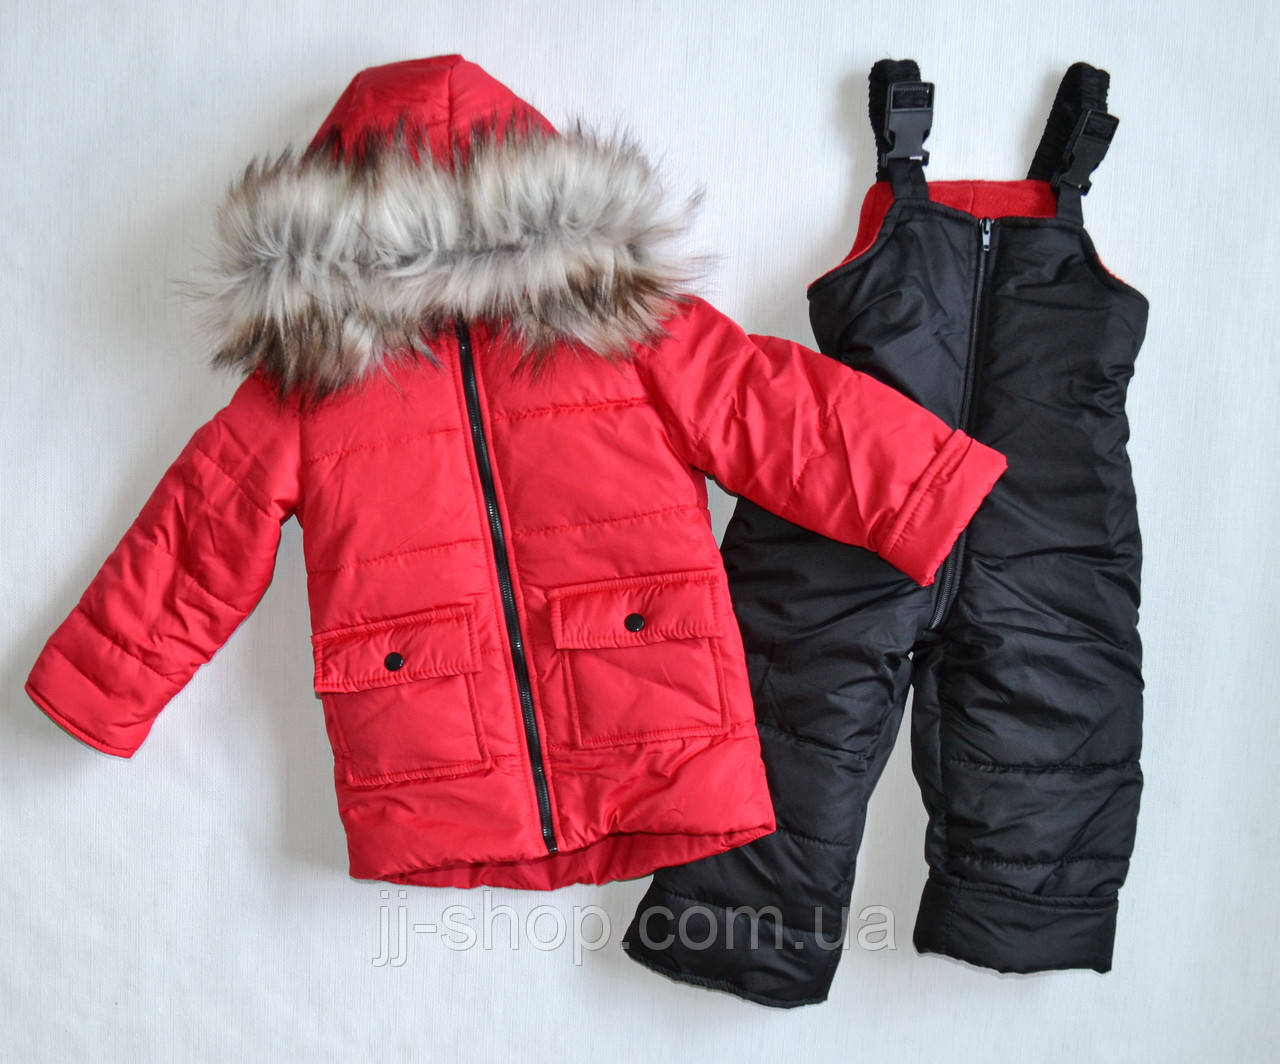 Дитячий зимовий комбінезон унісекс для дівчаток і хлопчиків 2 і 4 роки червоного кольору